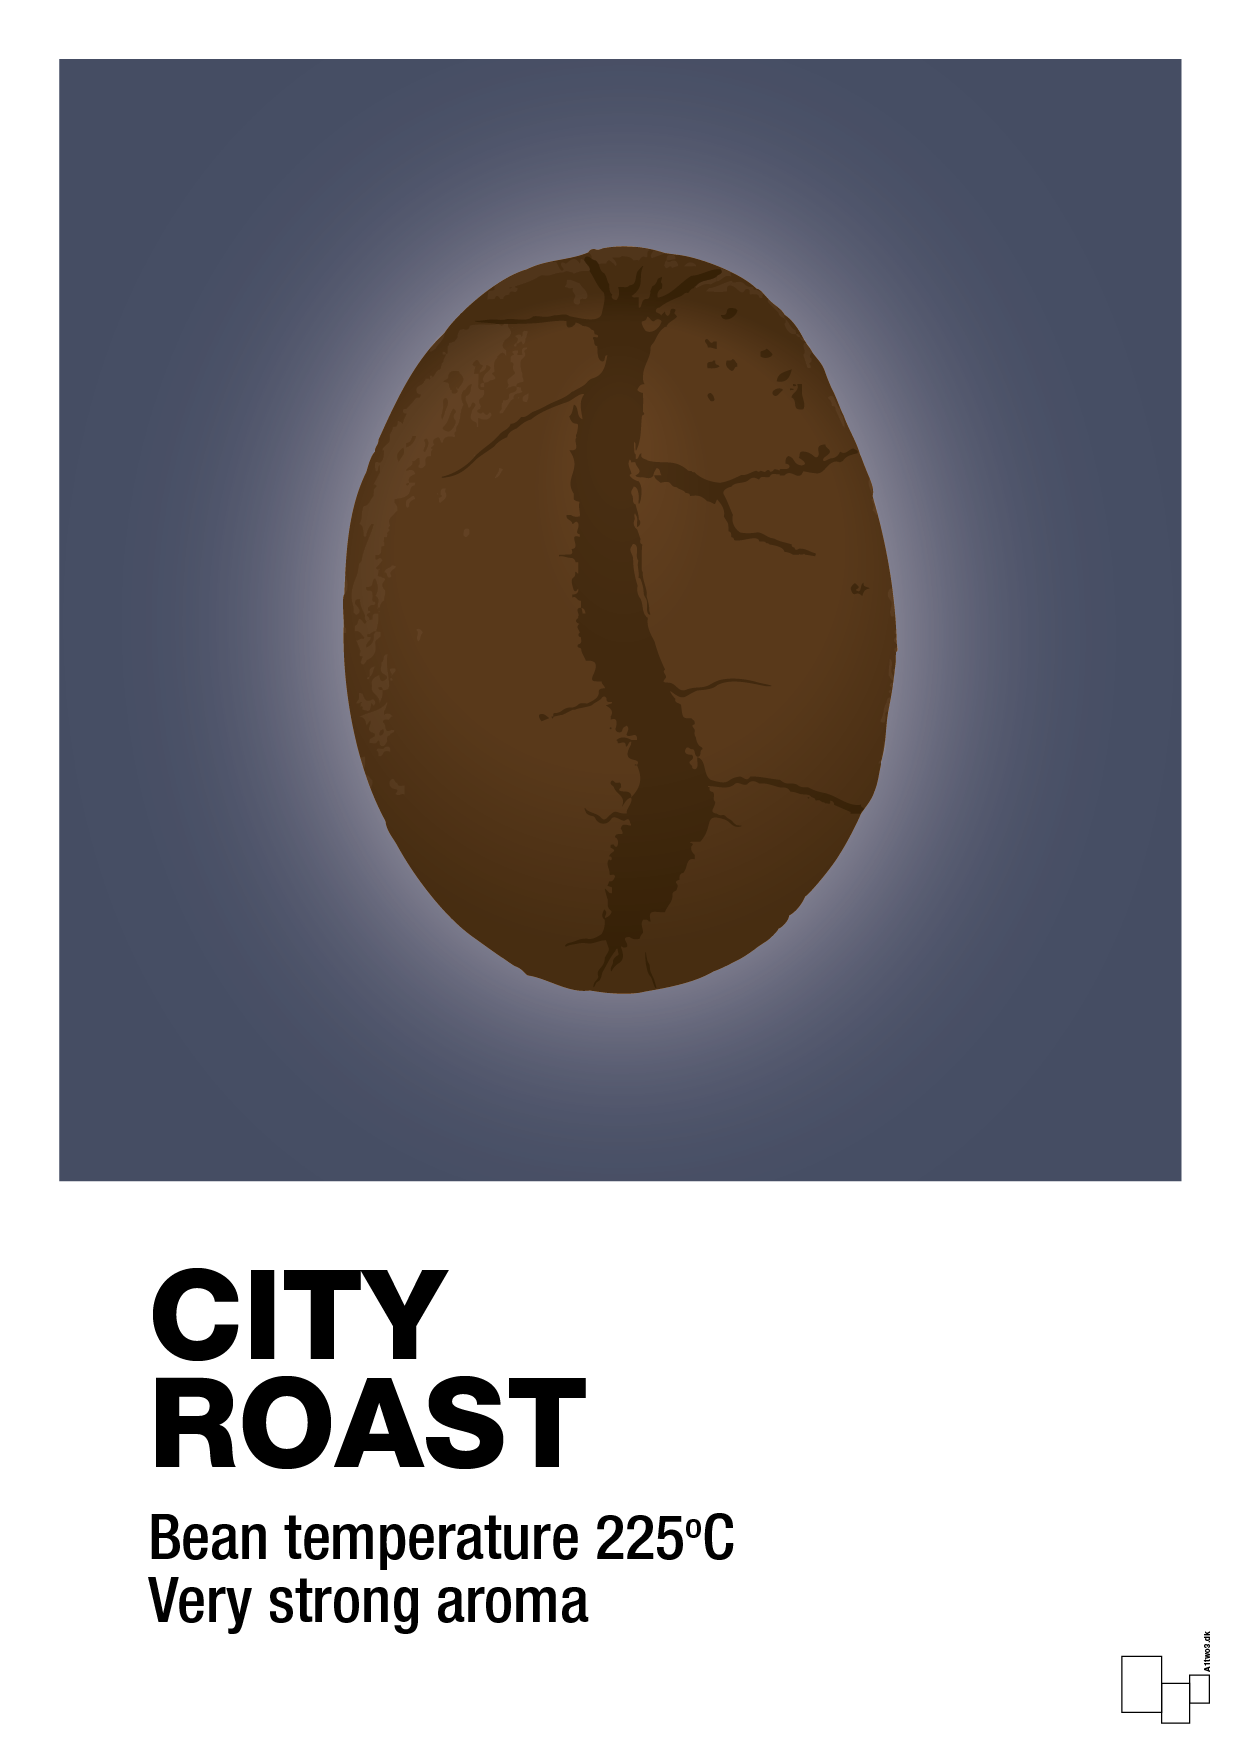 city roast - Plakat med Mad & Drikke i Petrol